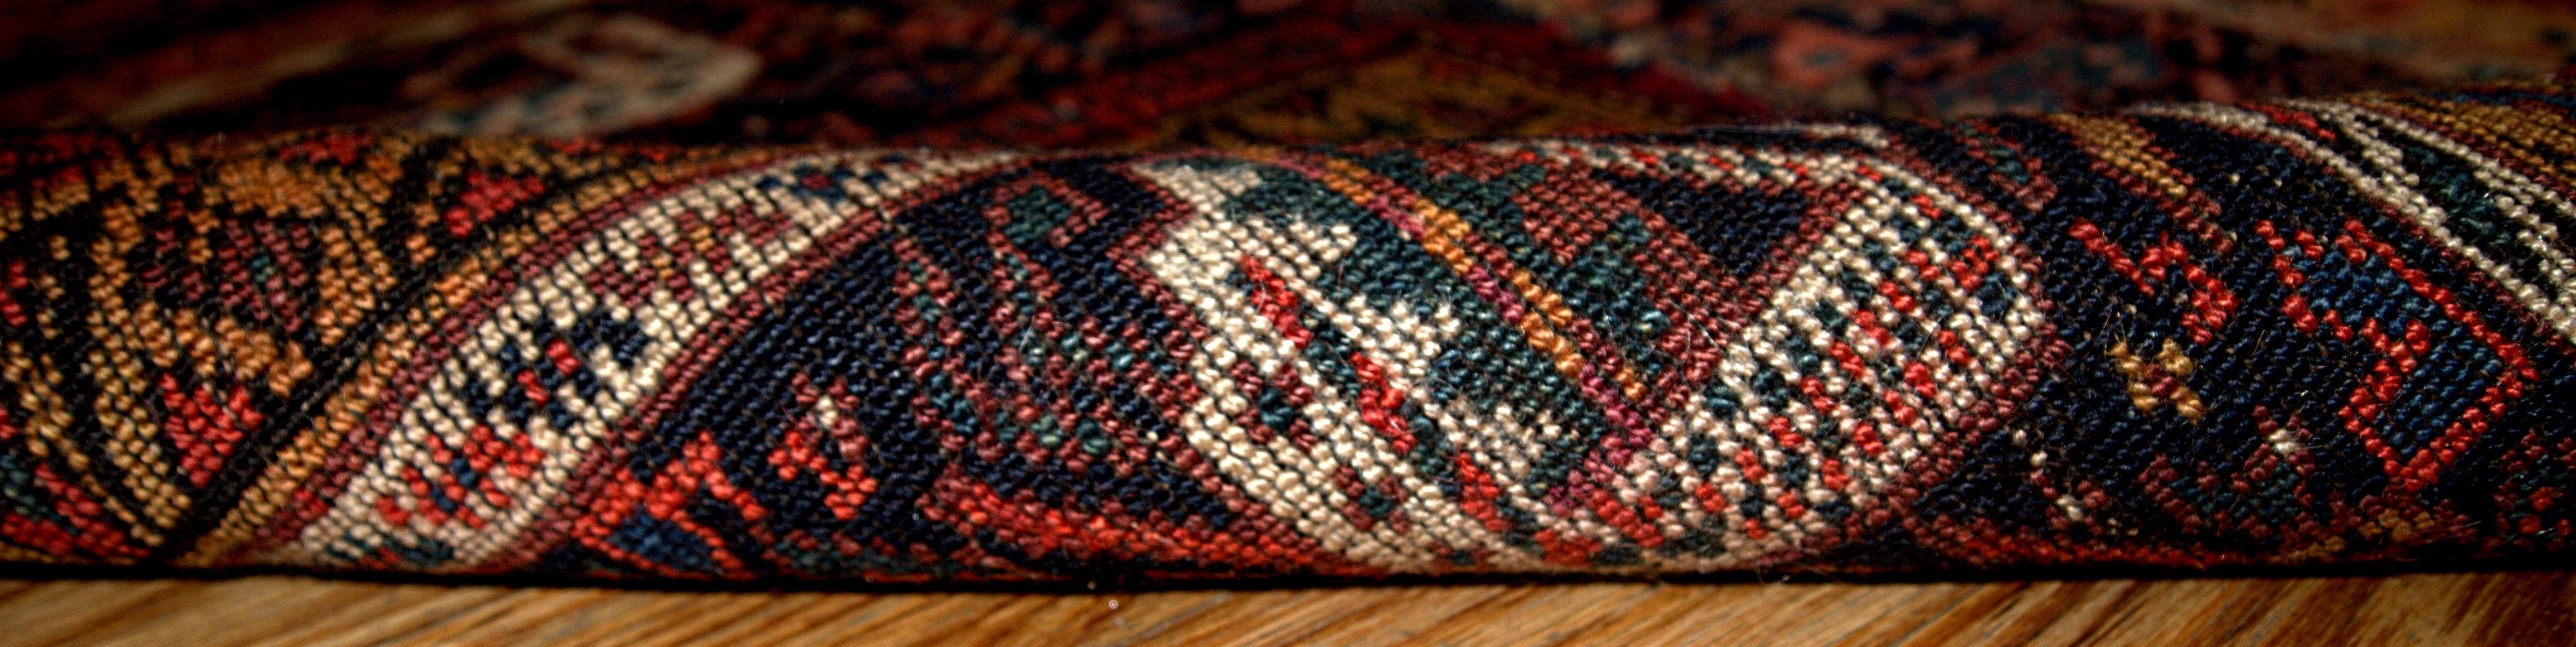 Handgefertigte antike Sammlertasche im kurdischen Stil mit den Maßen 1,9' x 2,6' (58cm x 79cm) in gutem Originalzustand. Nachtblaues Feld und dekoratives Tribal-Muster in weißen und roten Farbtönen.